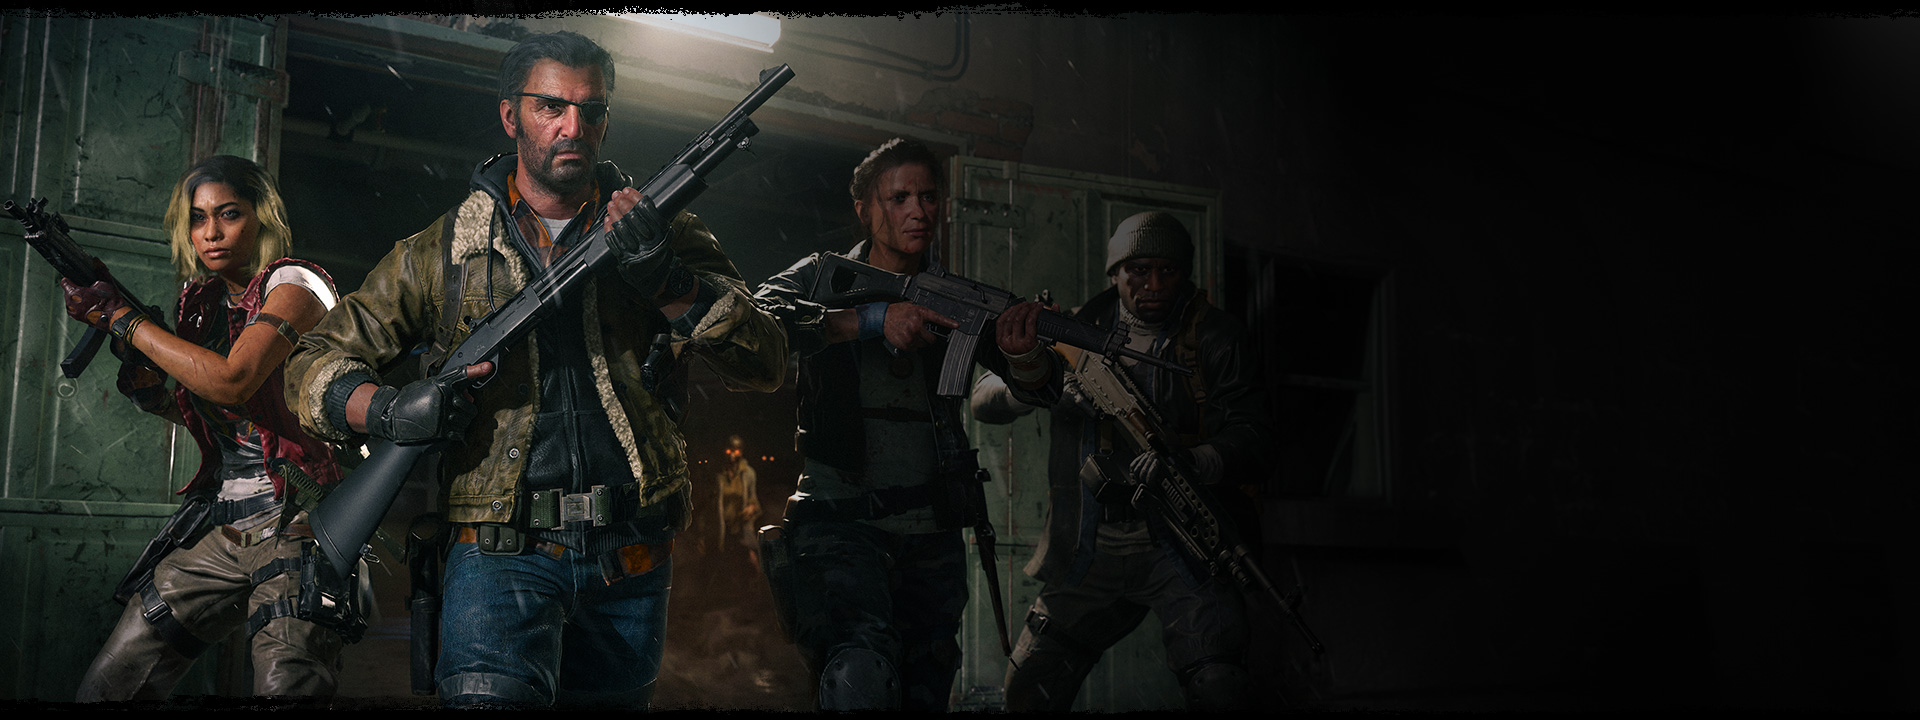 Négy karakter lép ki egy raktárból felemelt fegyverekkel, miközben egy zombi áll mögöttük, fénylő narancssárga szemekkel.